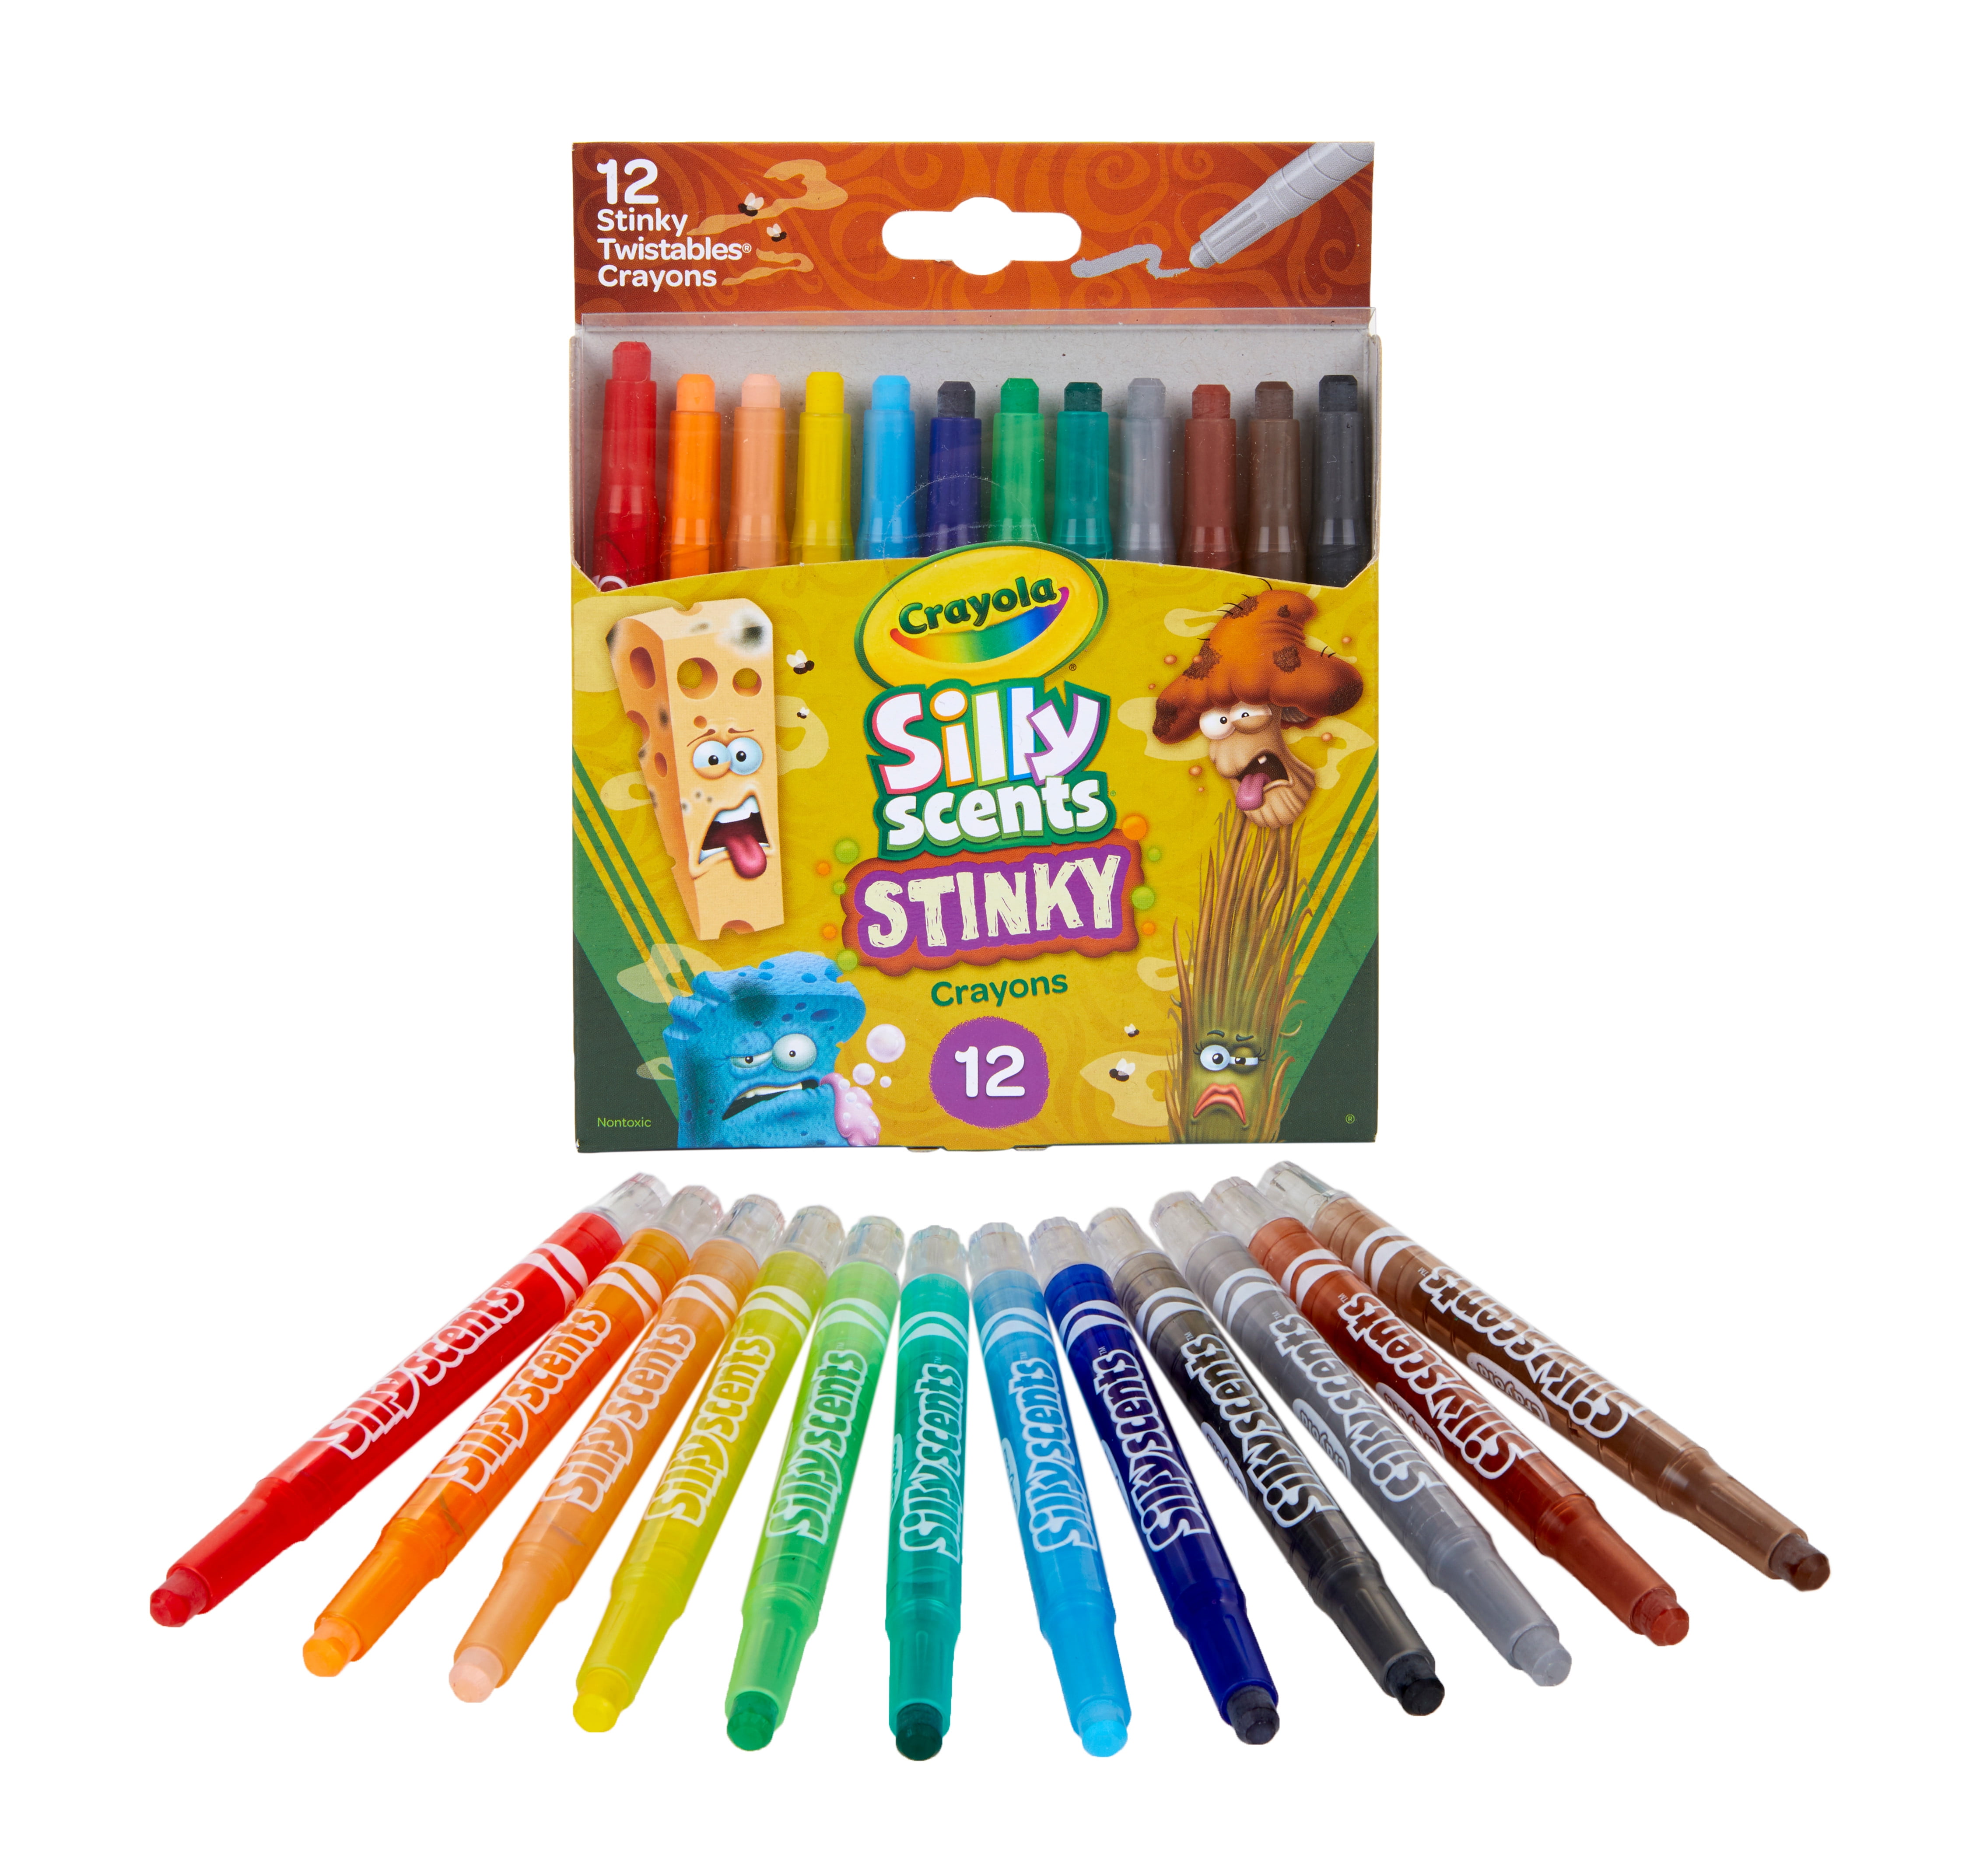 Knowledge Tree  Crayola Binney + Smith Crayola Silly Scents Mini